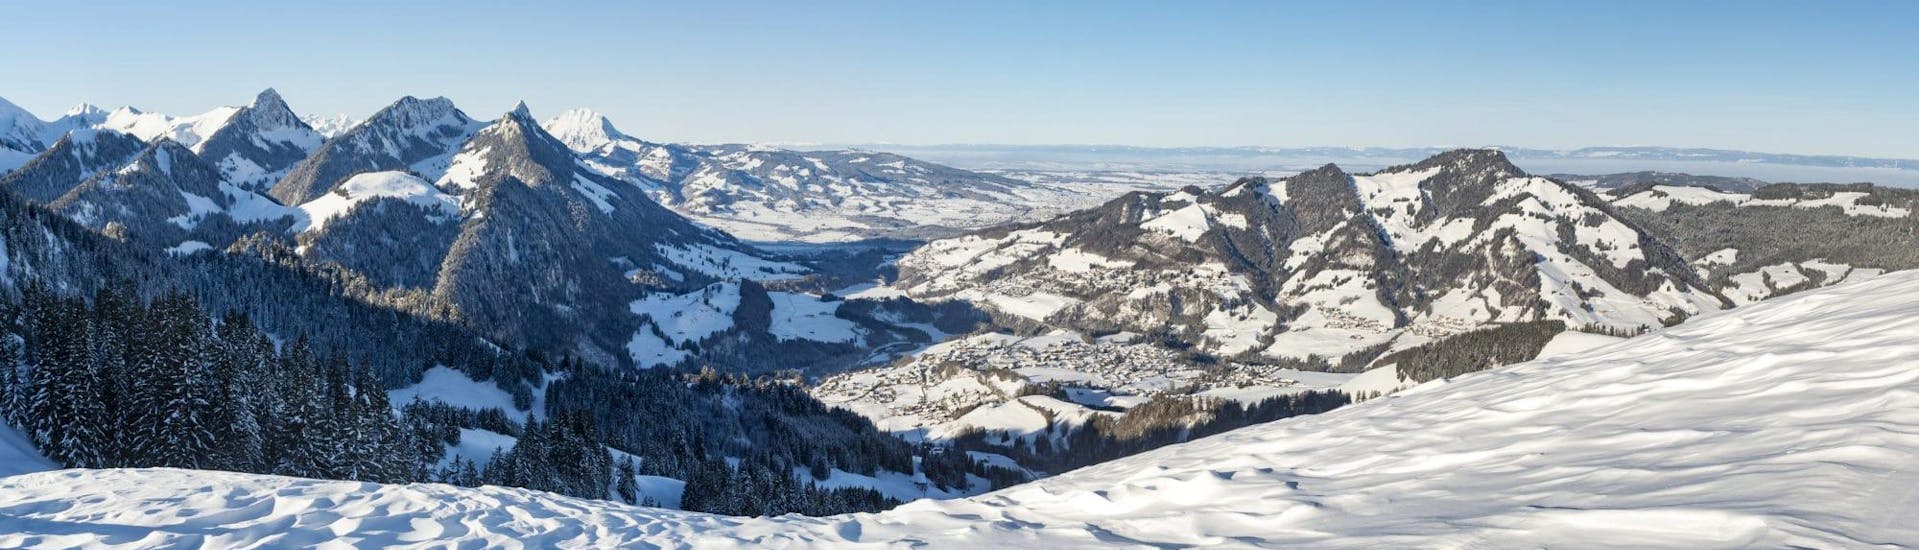 Vue sur les montagnes entourant la station de ski de Charmey où l'école suisse de ski Charmey propose des cours de ski à ceux qui veulent apprendre à skier.